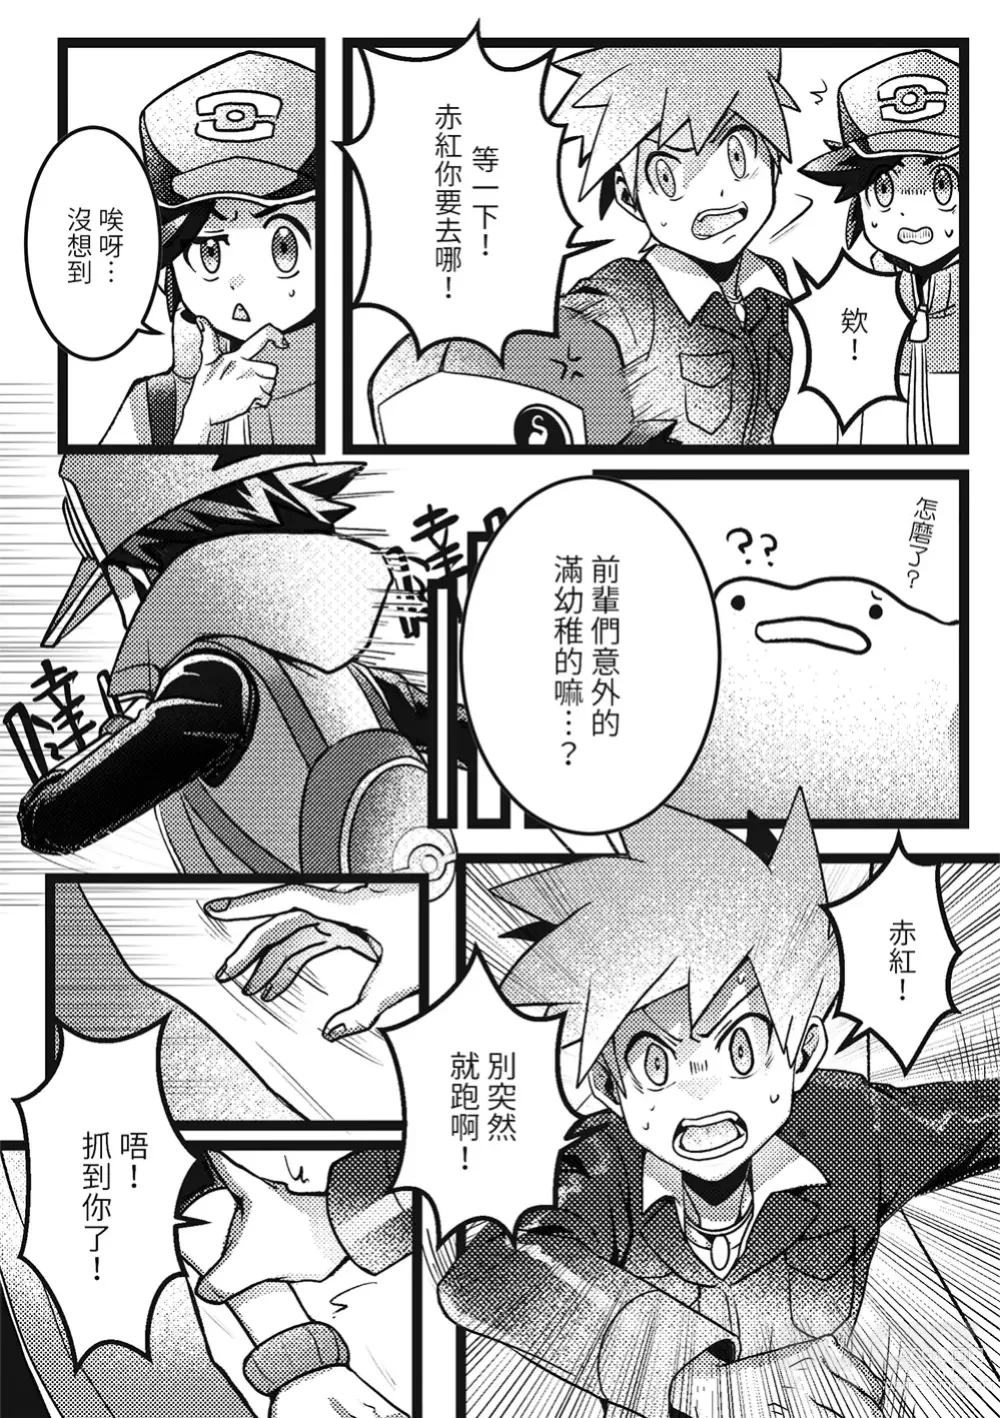 Page 7 of doujinshi Kimi dake shika yoku kunai